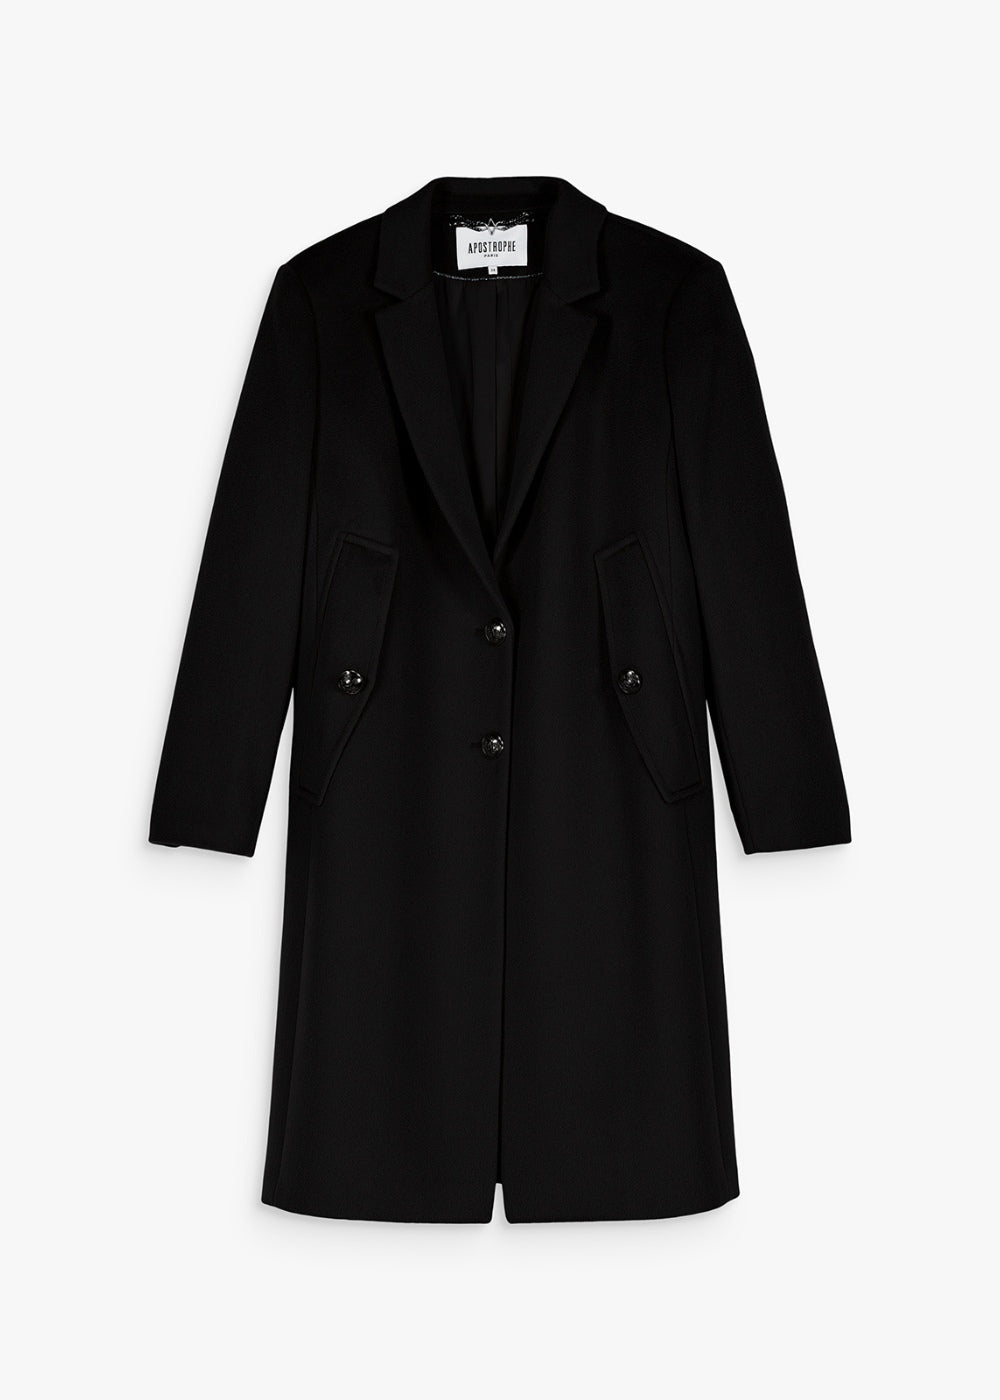 Manteau cape mi-long laine cachemire noir avec fausses poches plaquées et détails boutons noirs